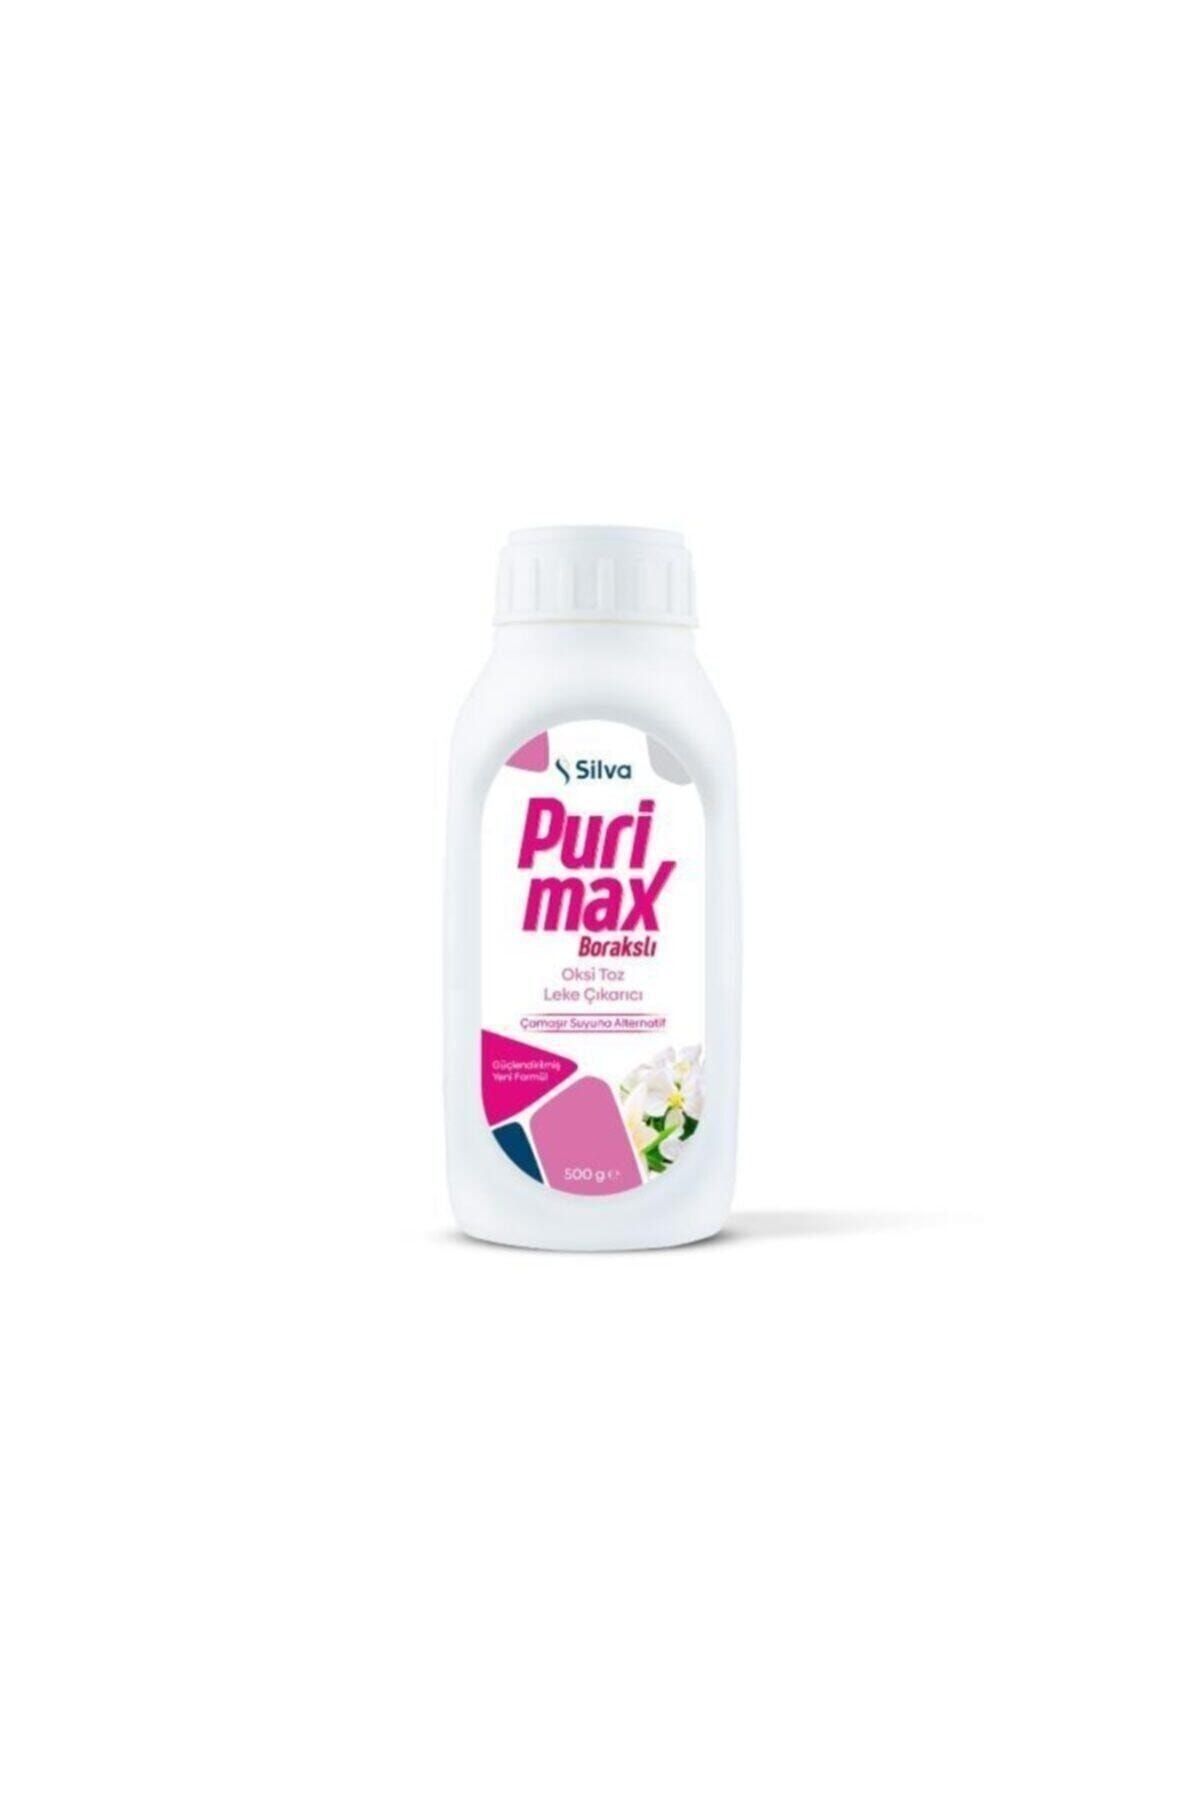 Purimax Oksi Toz Leke Çıkarıcı Borakslı (çamaşır Suyuna Alternatif) 500 Gr_0